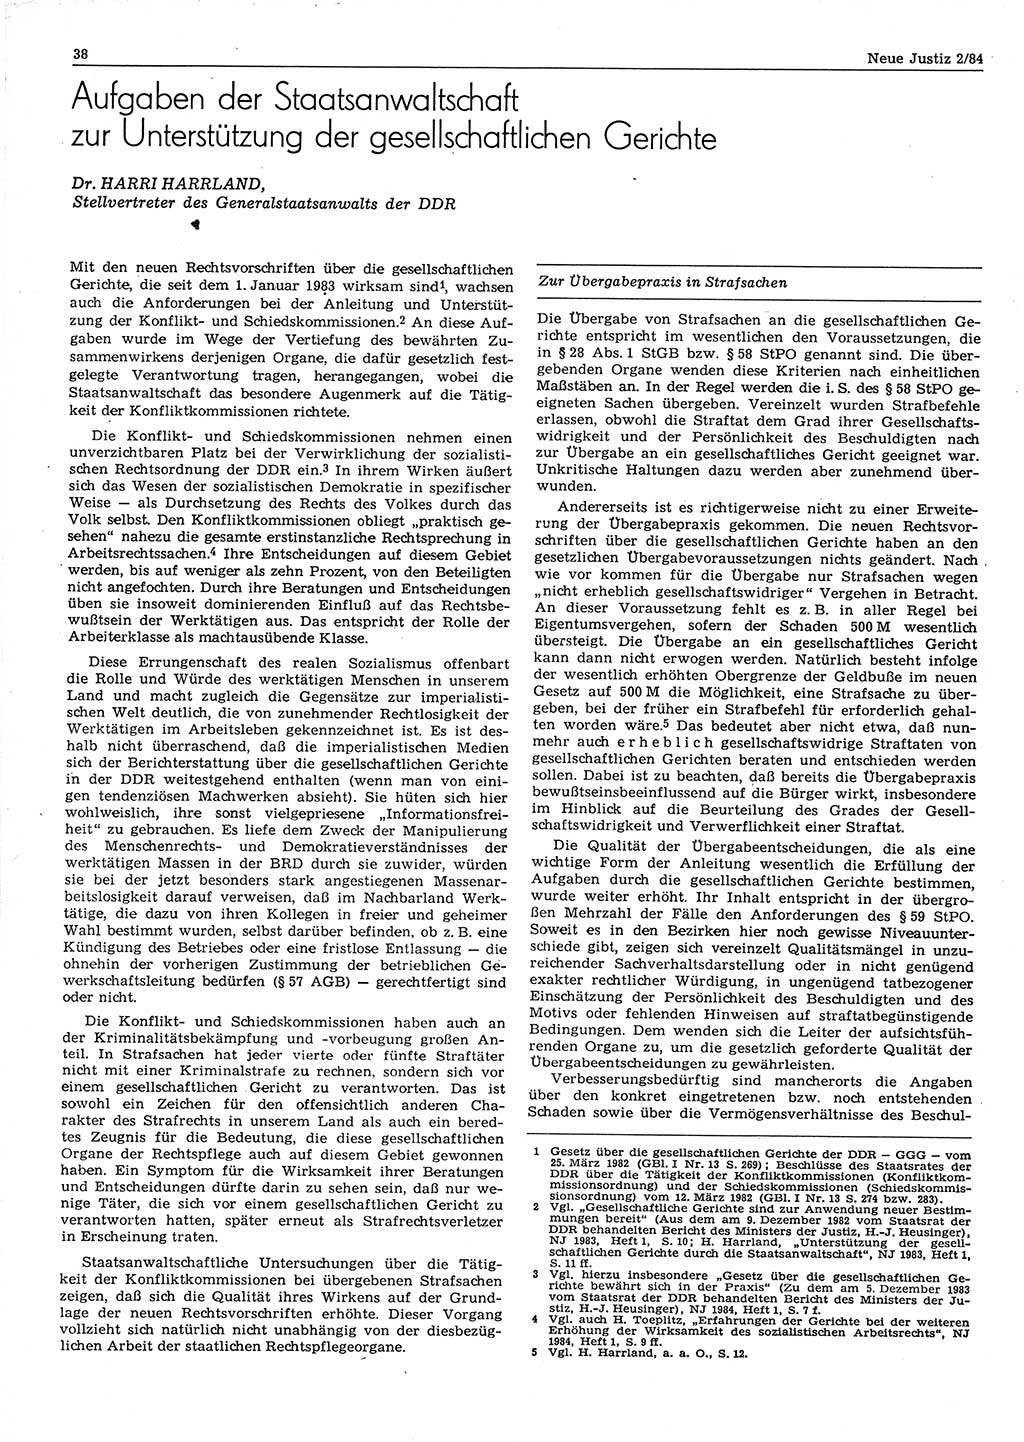 Neue Justiz (NJ), Zeitschrift für sozialistisches Recht und Gesetzlichkeit [Deutsche Demokratische Republik (DDR)], 38. Jahrgang 1984, Seite 38 (NJ DDR 1984, S. 38)